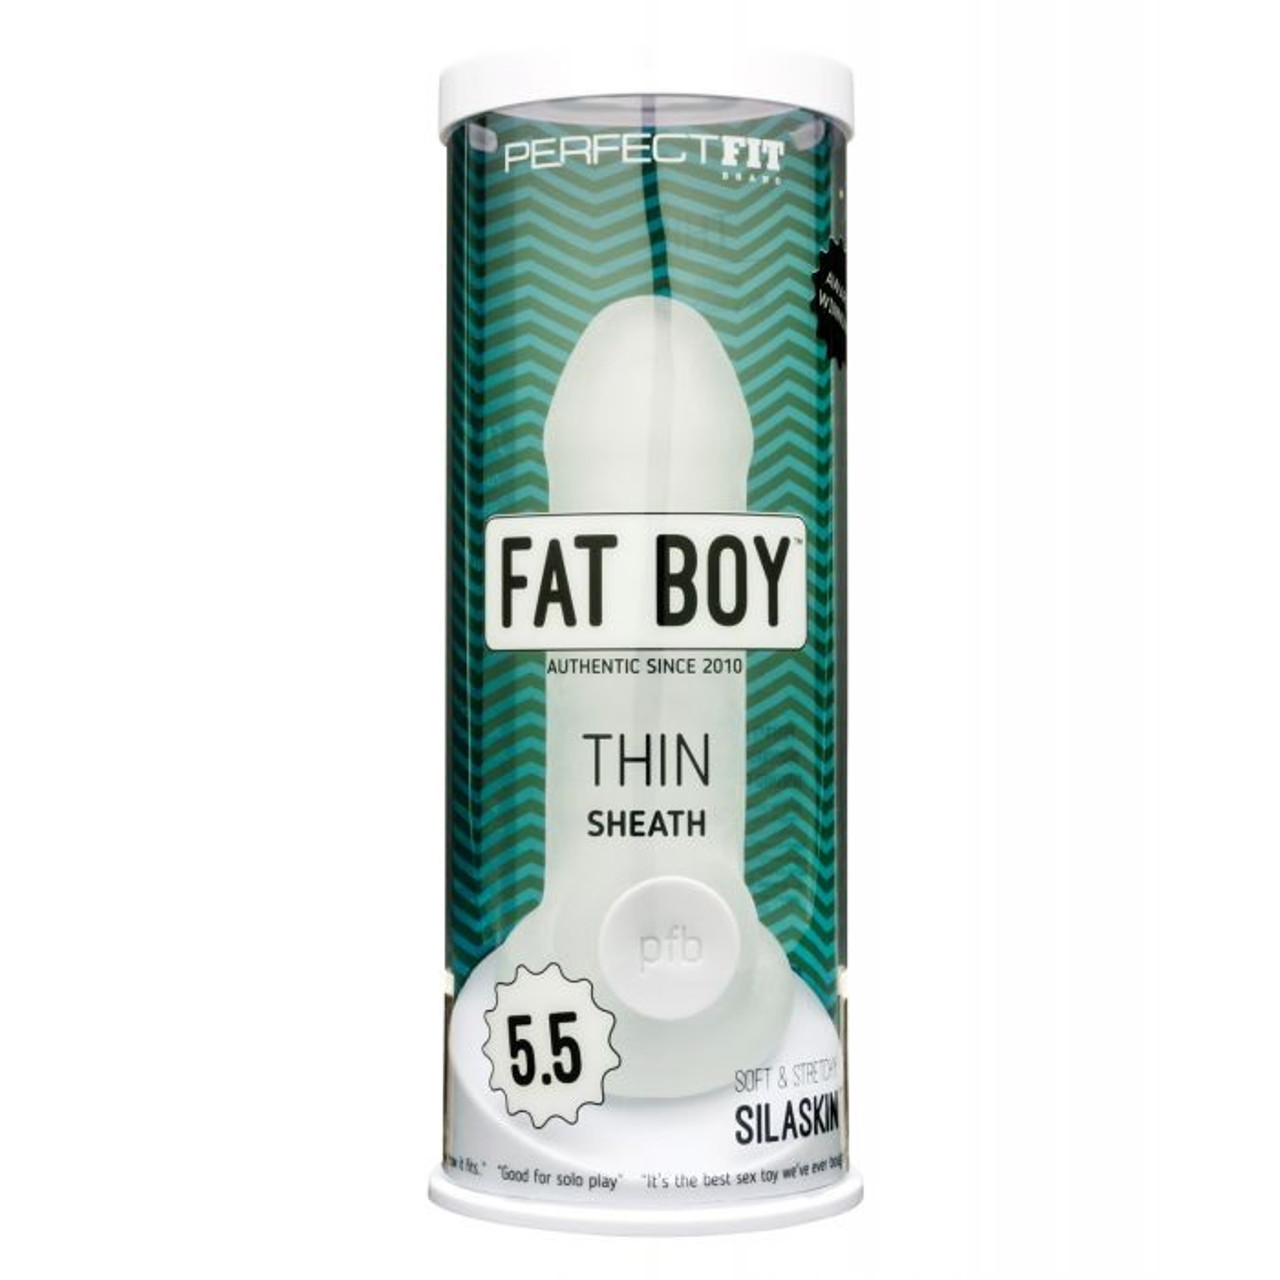 Perfect Fit Fat Boy Thin Sheath - 5.5"